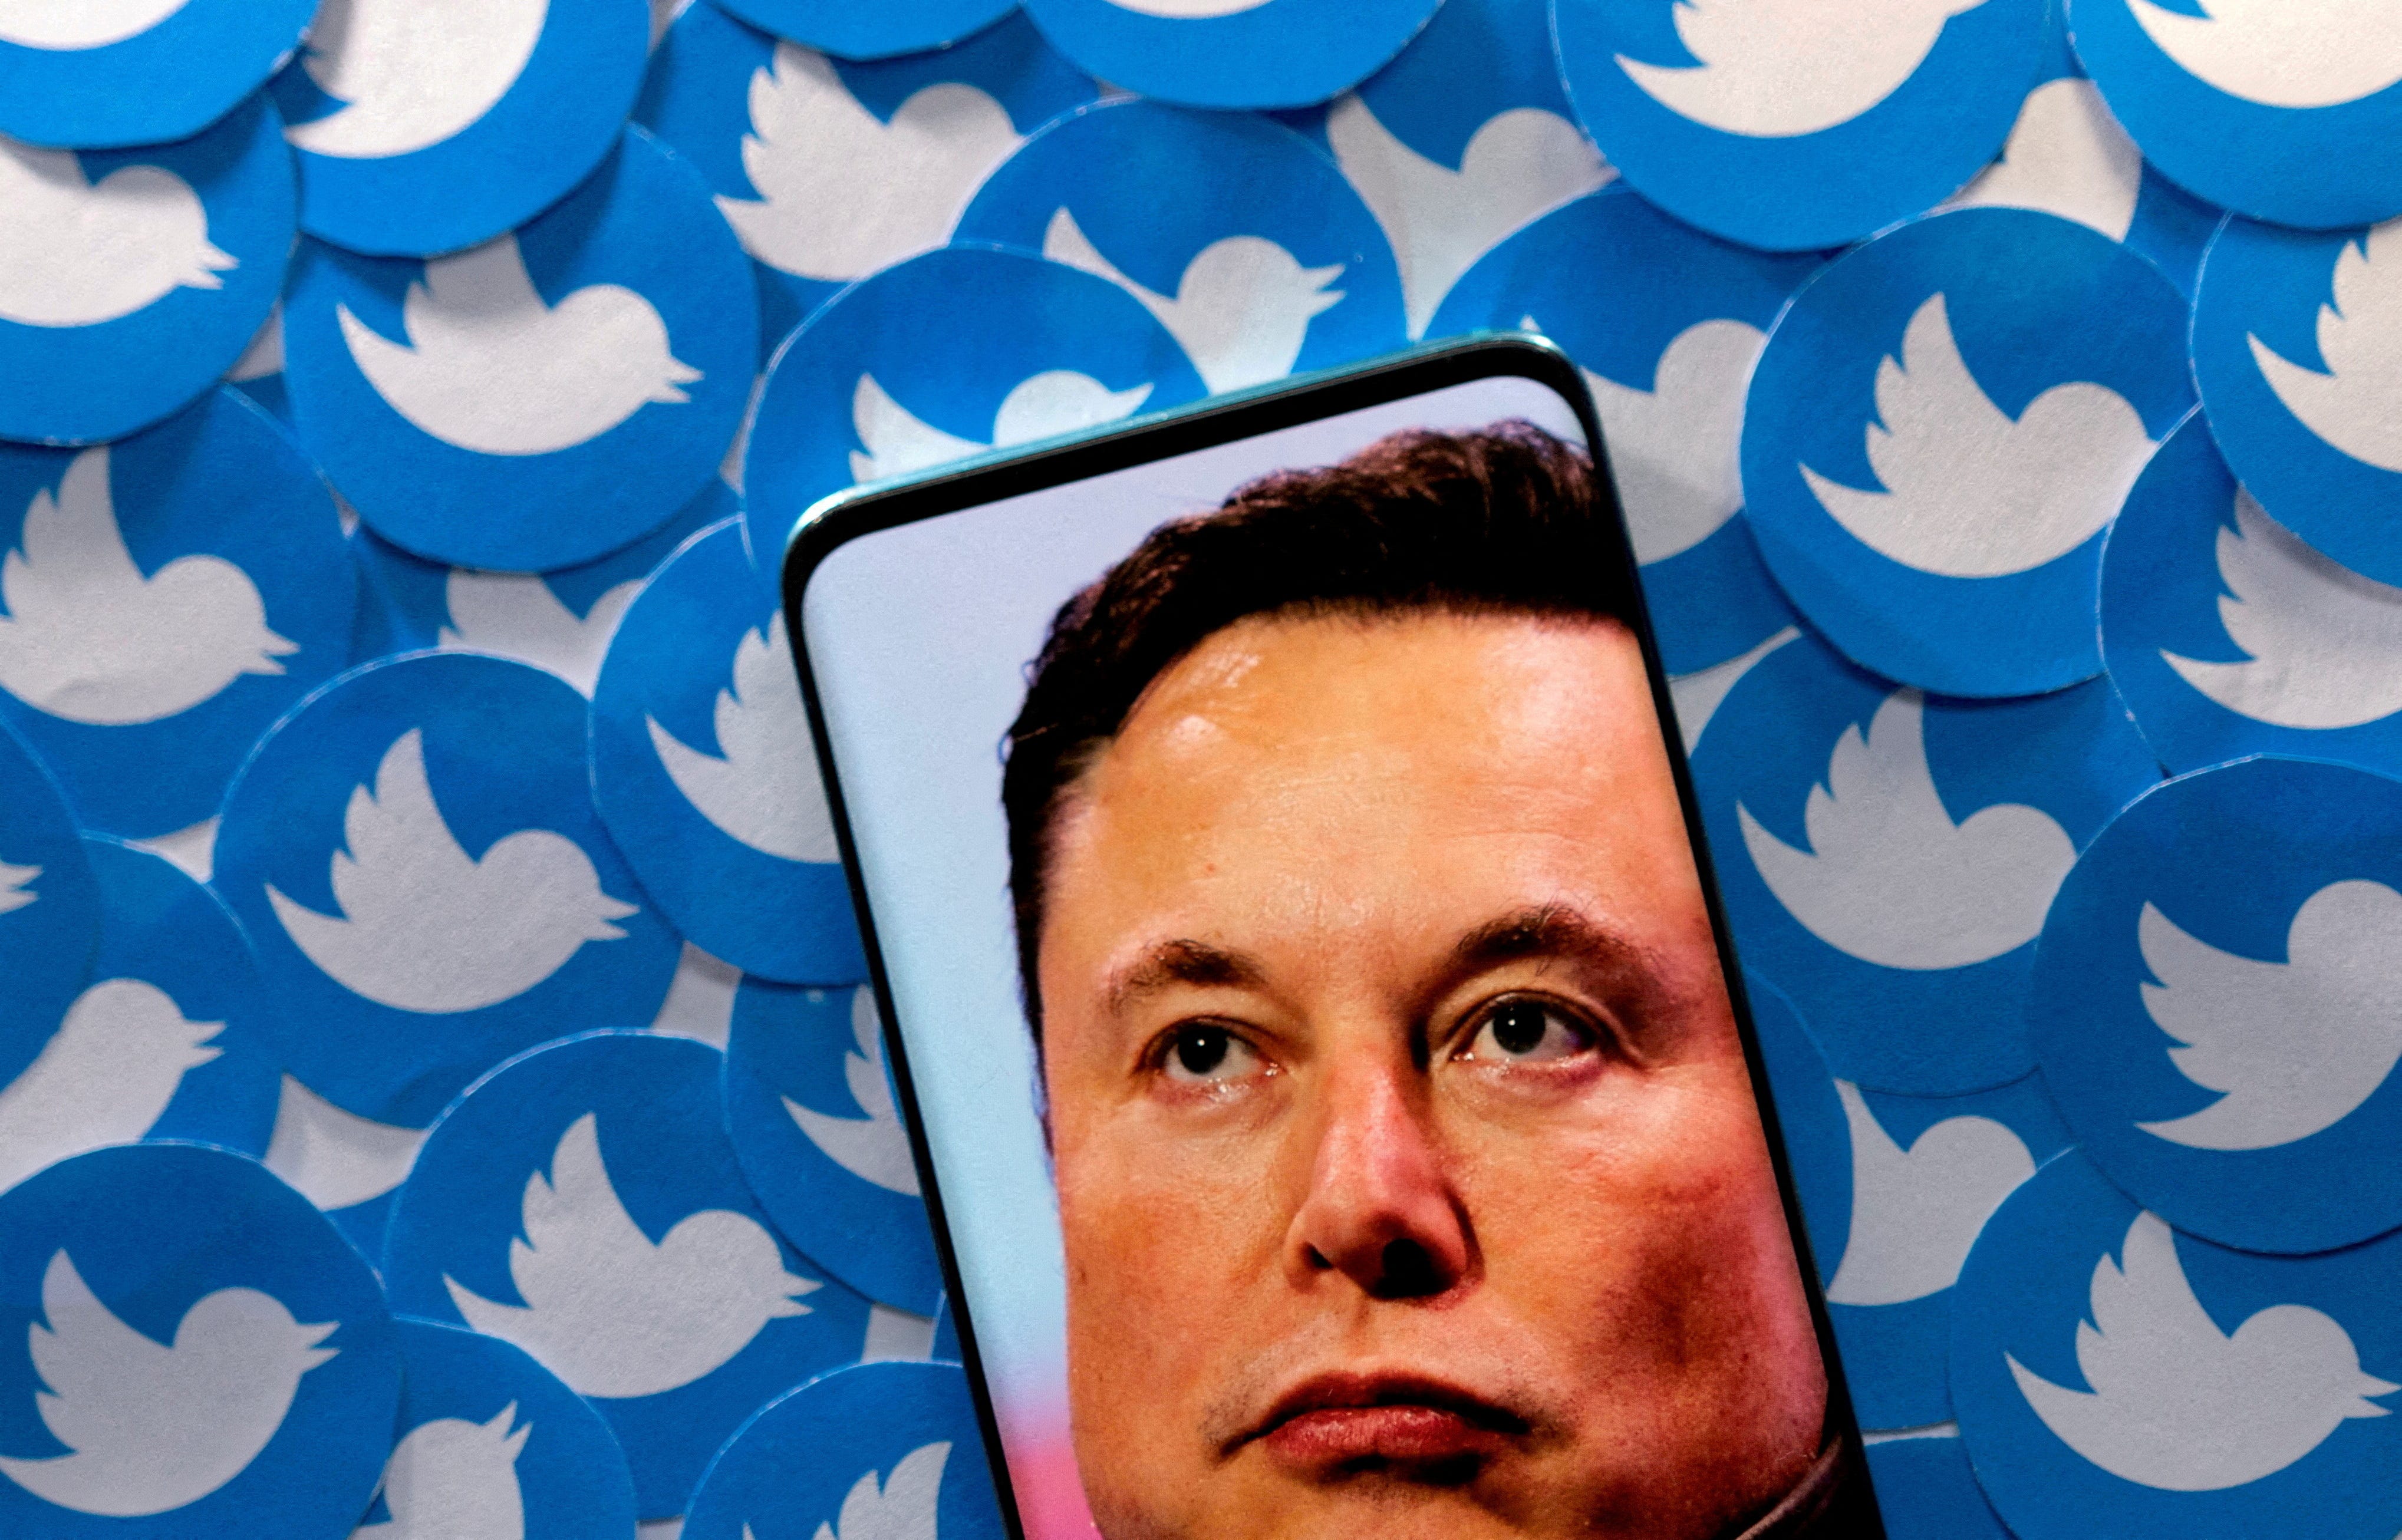 Elon Musk Shares Vision For “Twitter 2.0”